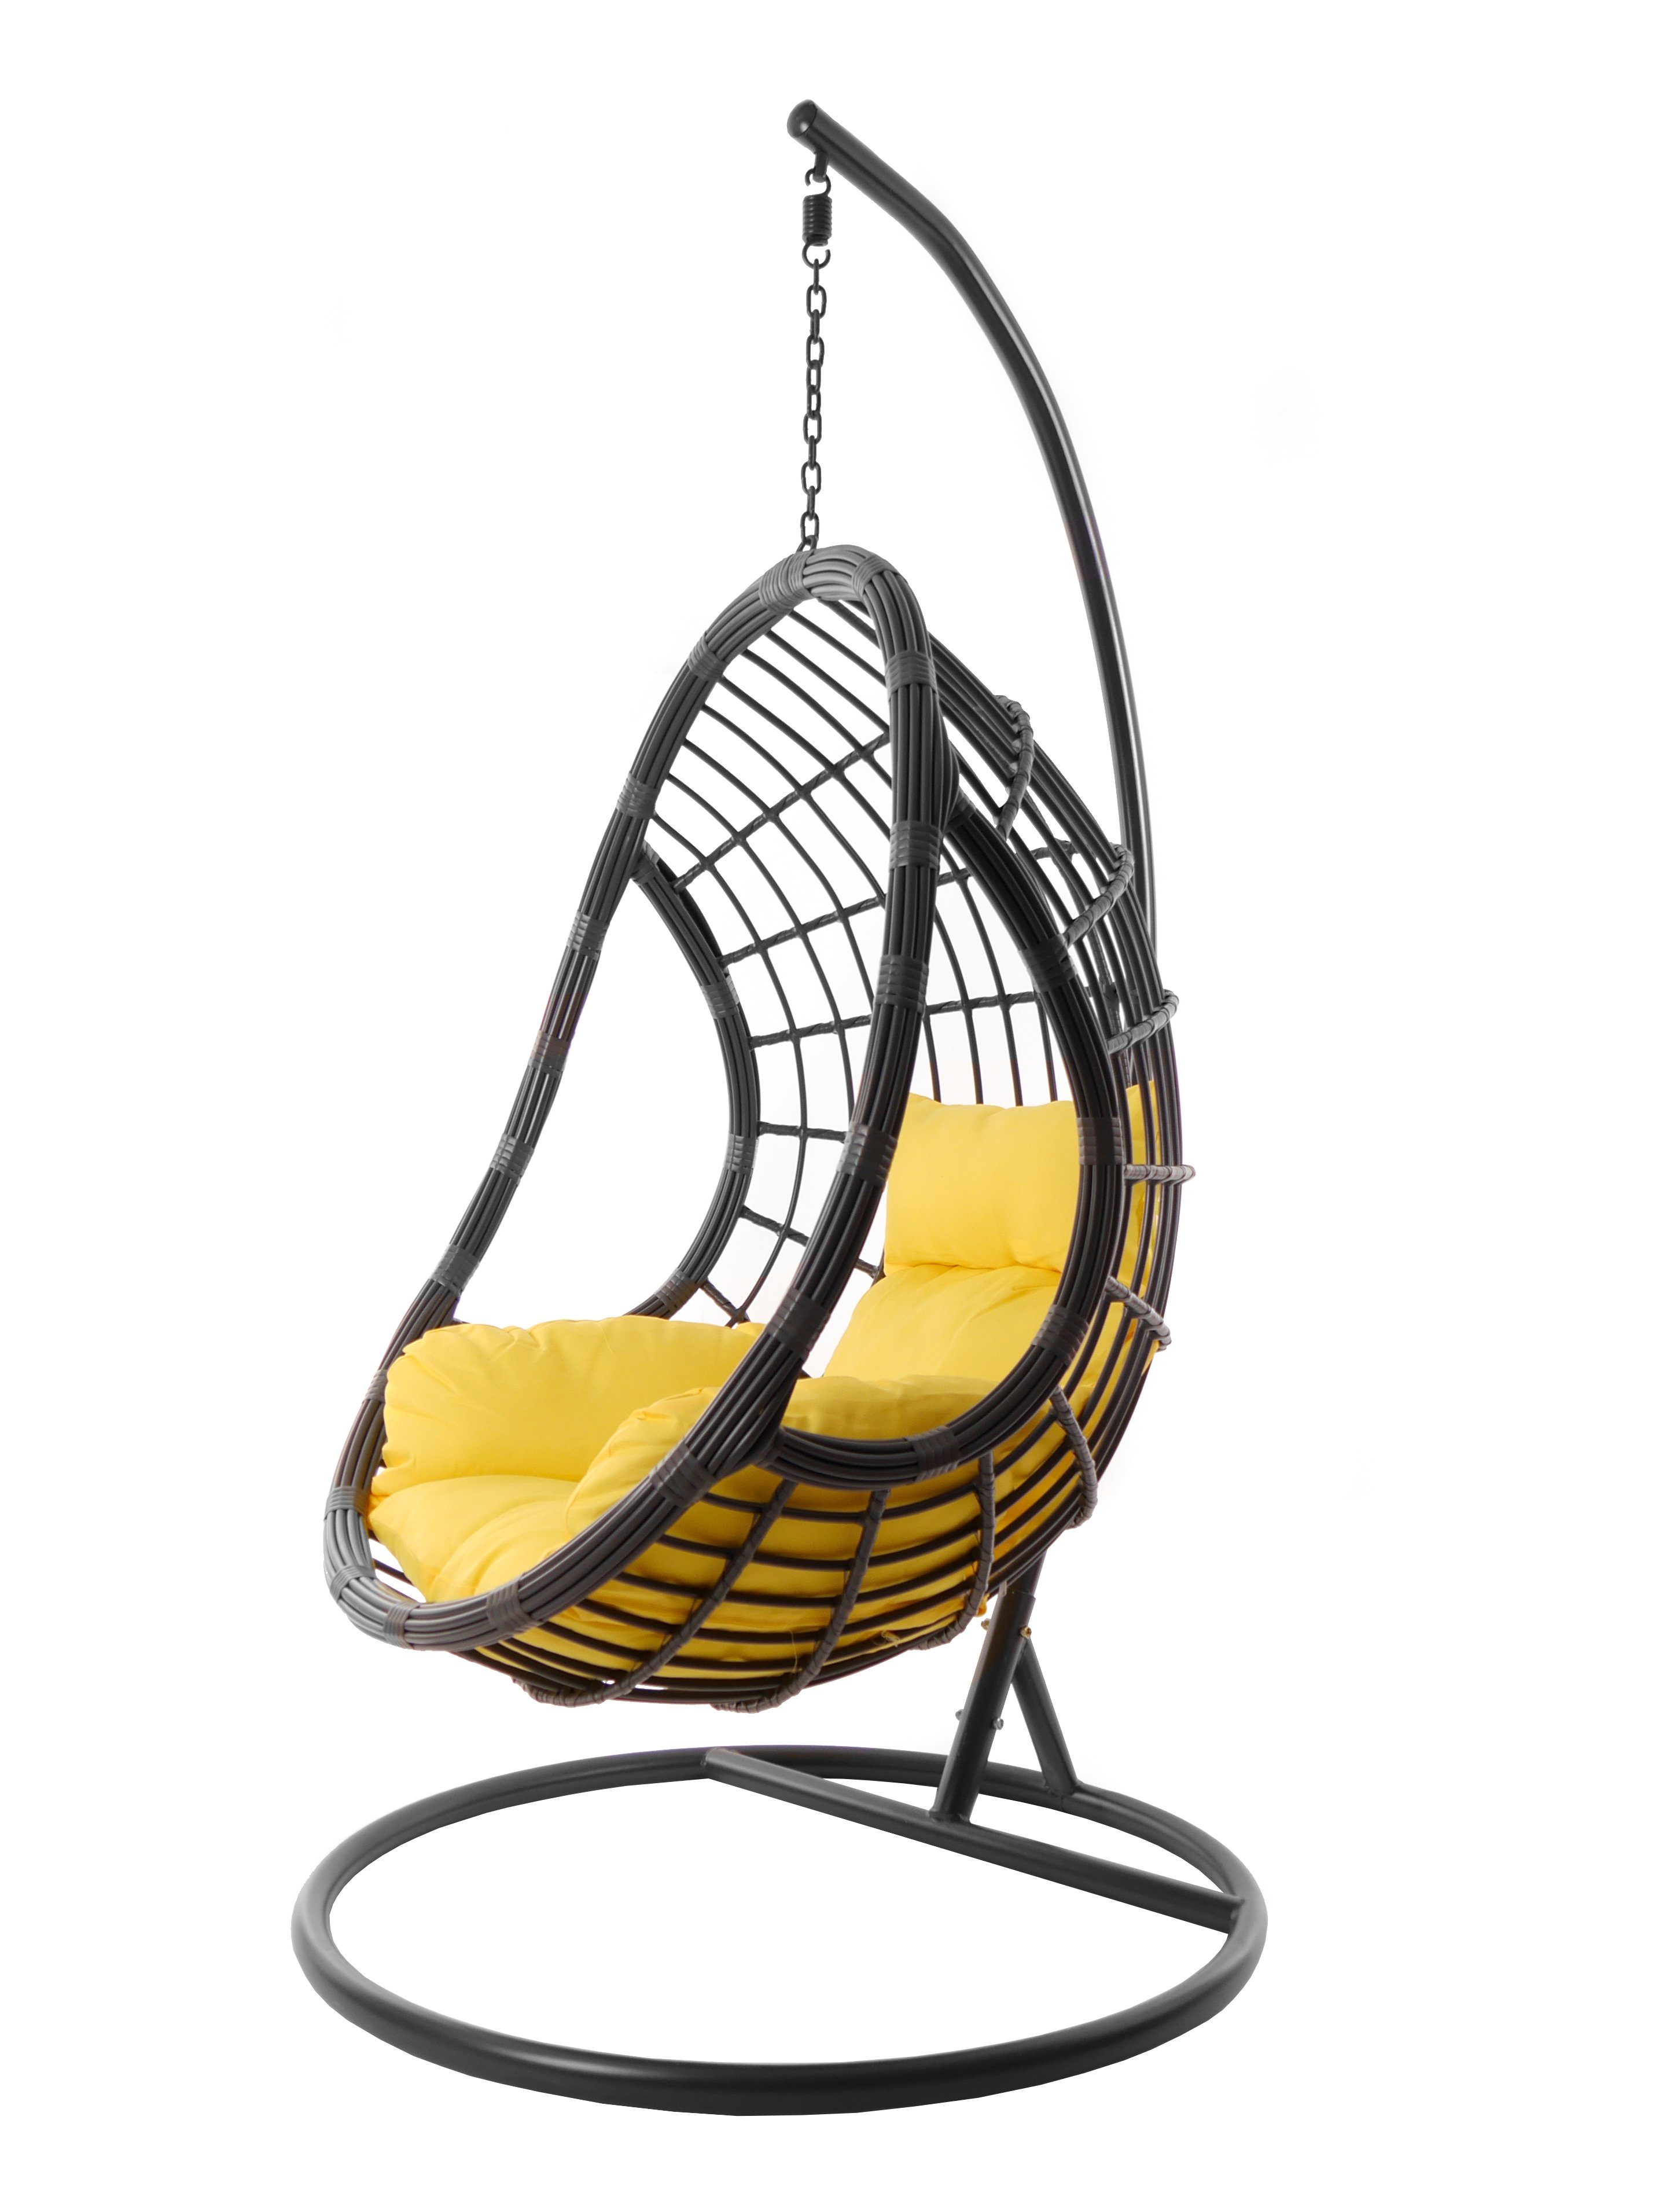 KIDEO Hängesessel Hängesessel PALMANOVA grau, Hängestuhl mit Gestell und Kissen, moderne Loungemöbel in grau, farbige Nest-Kissen gelb (2200 pineapple)